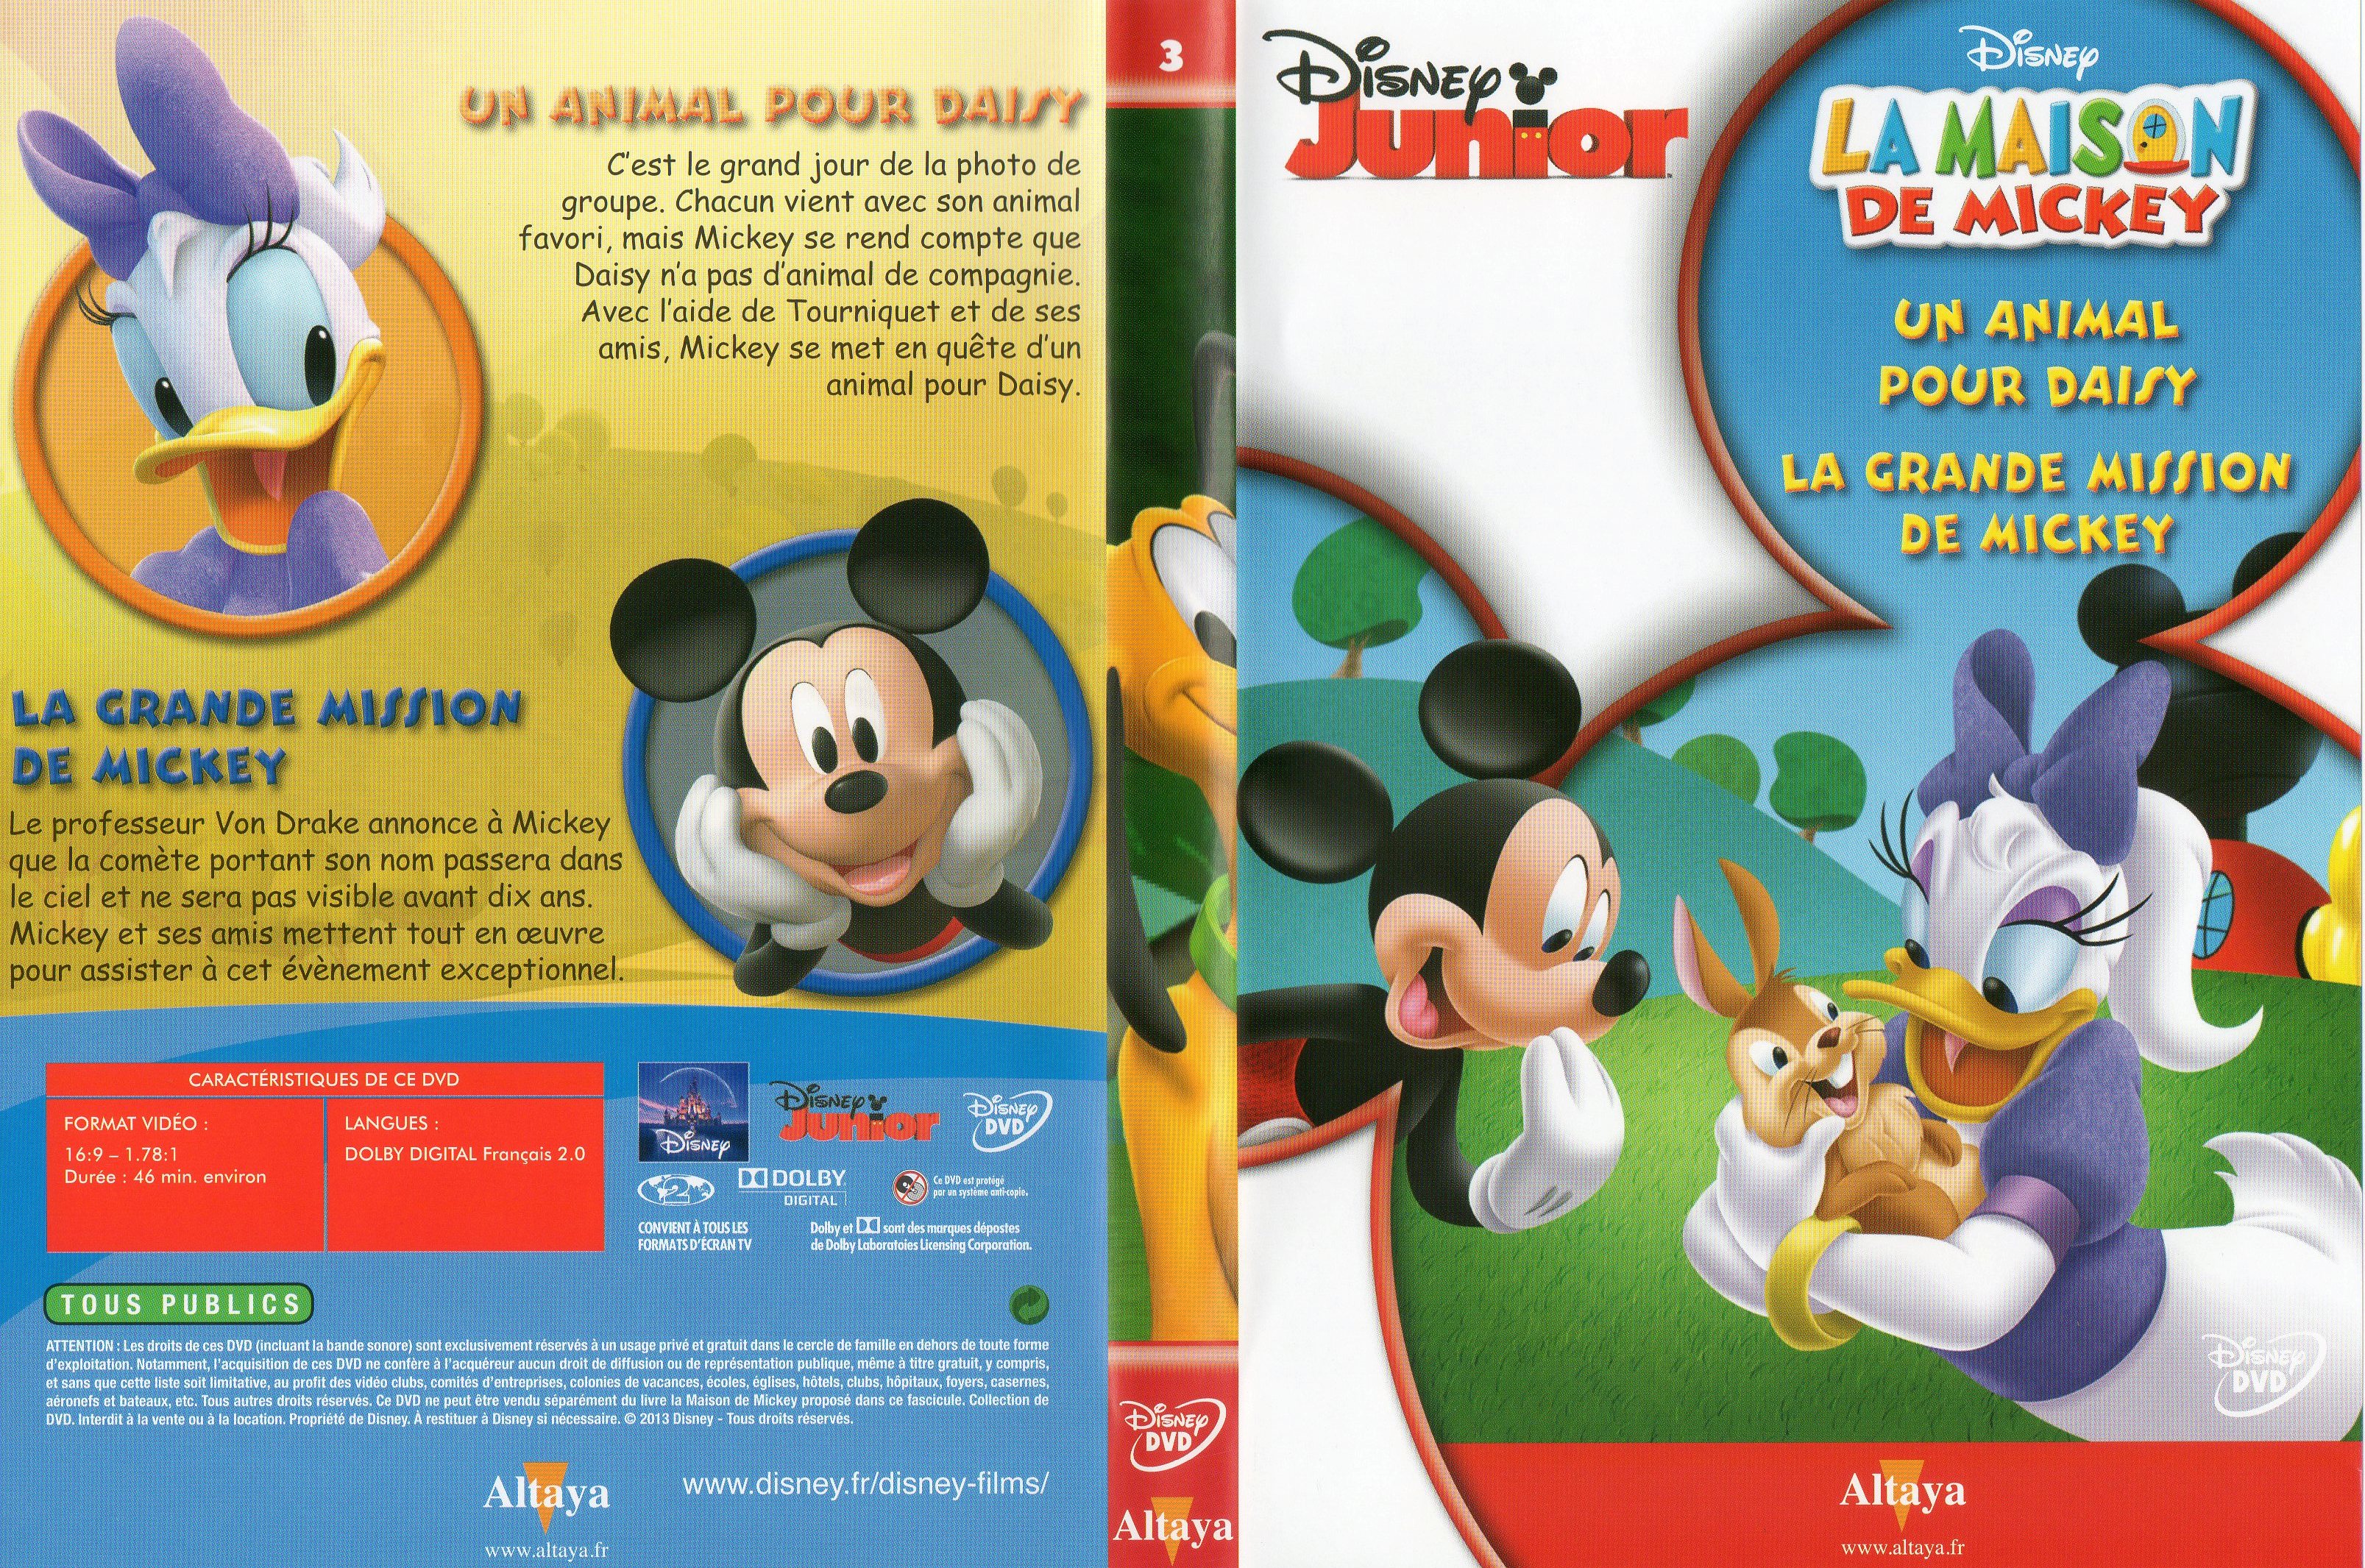 Jaquette DVD La maison de Mickey DVD 03